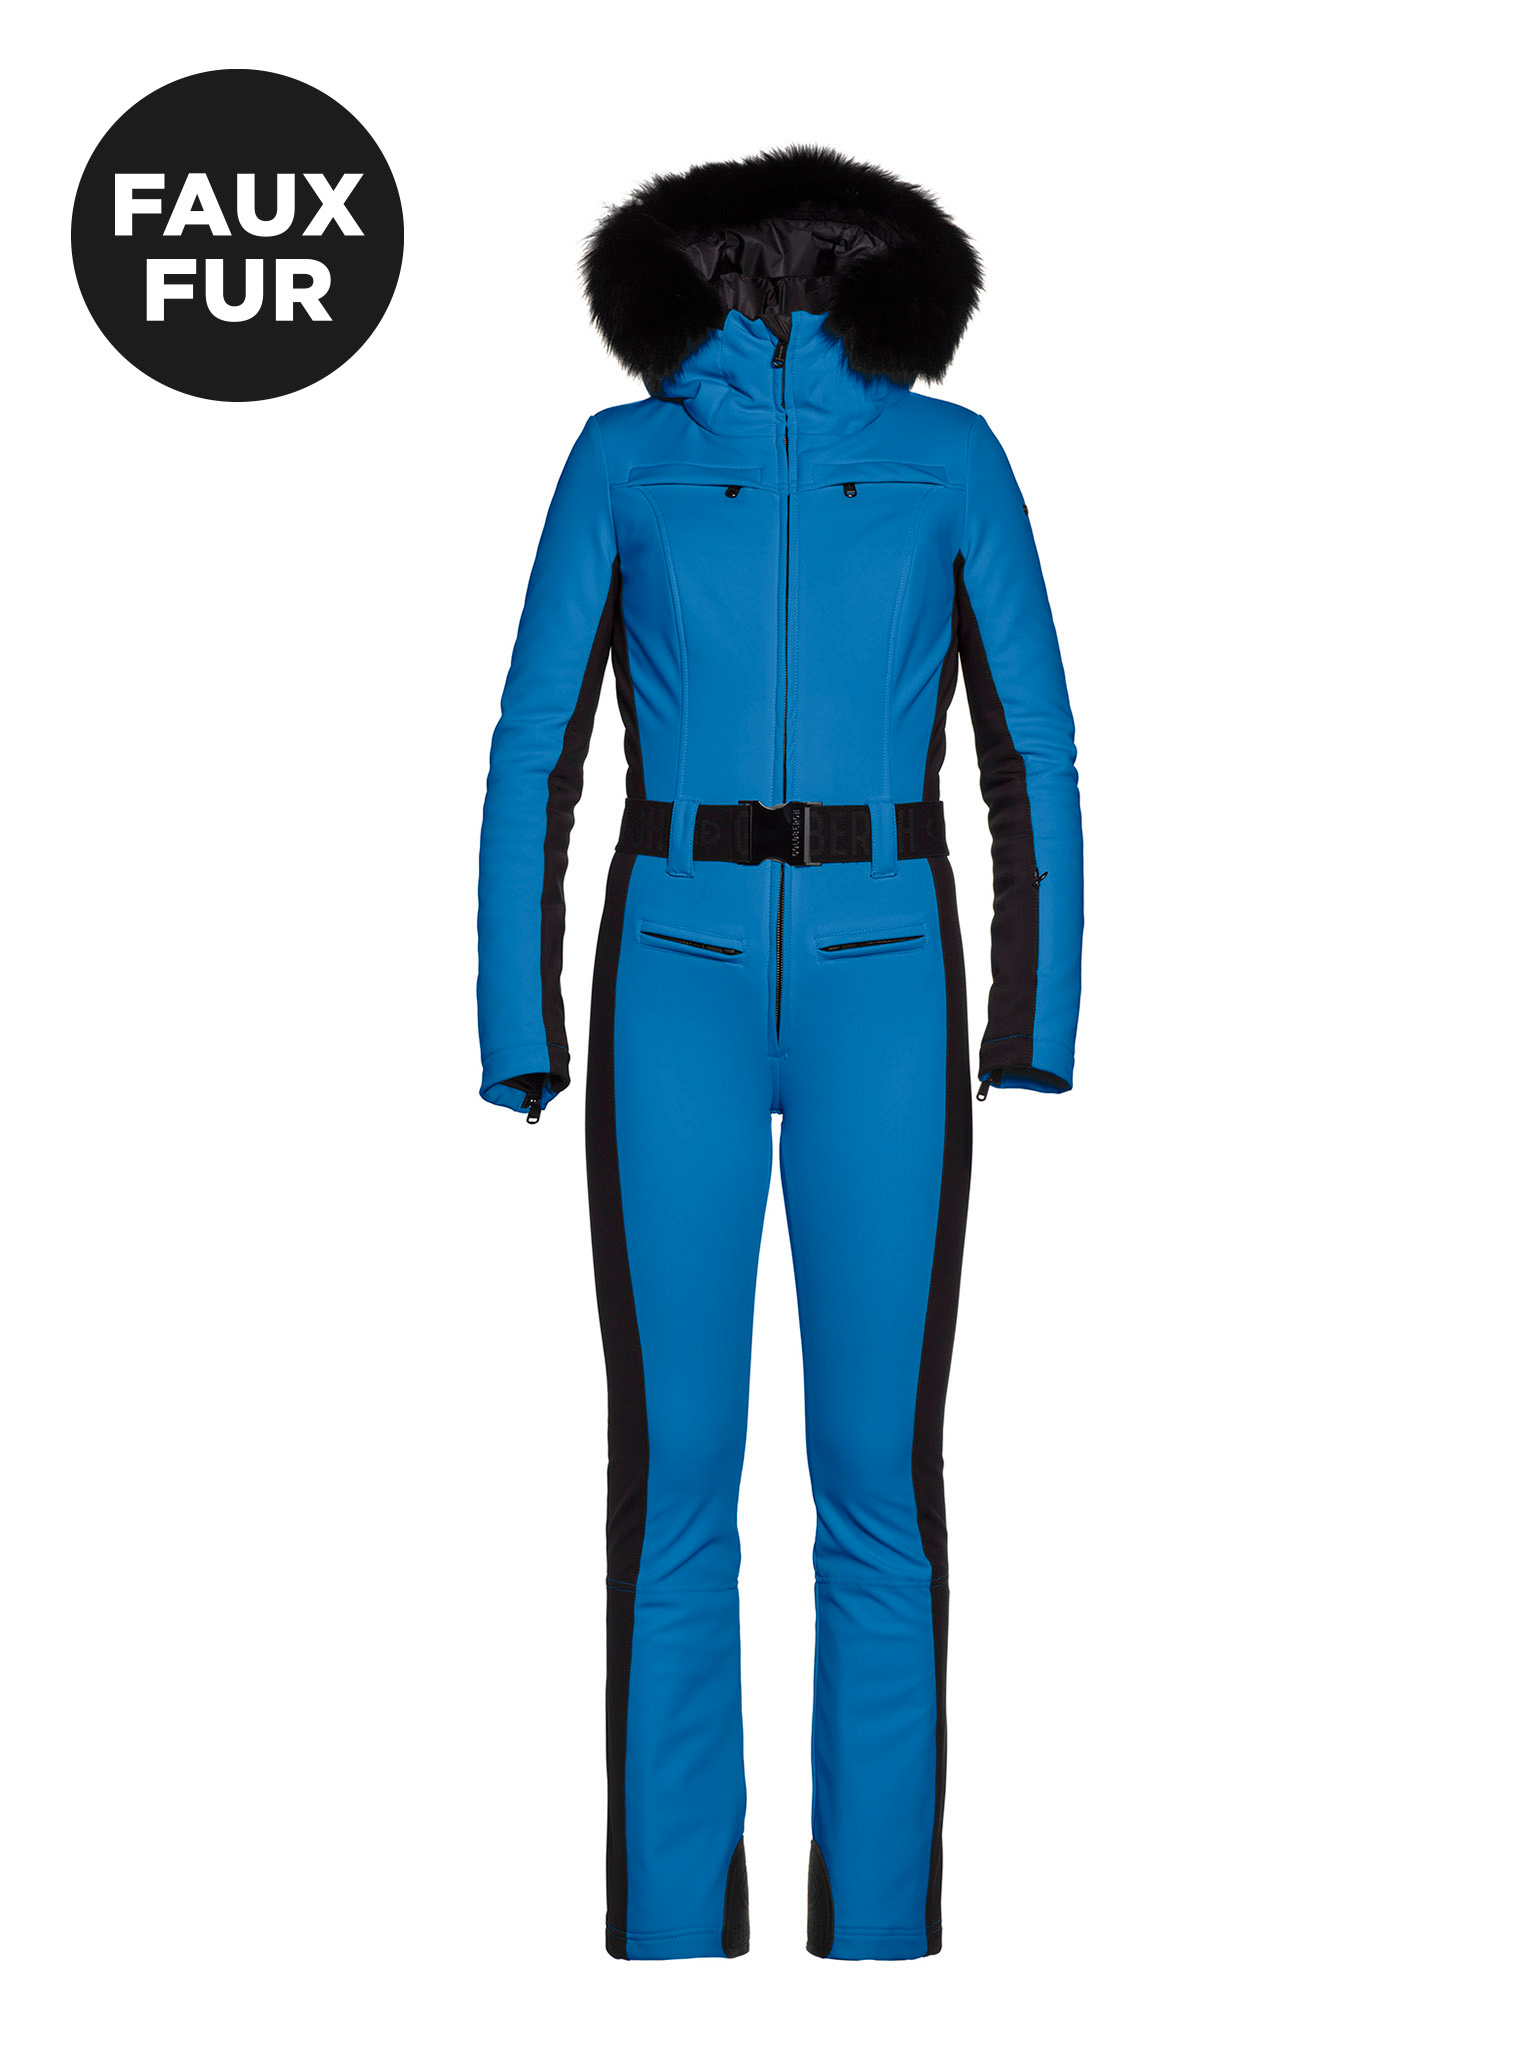 Goldbergh Parry Ski Suit No Fur W Sunshine Women's ski suits